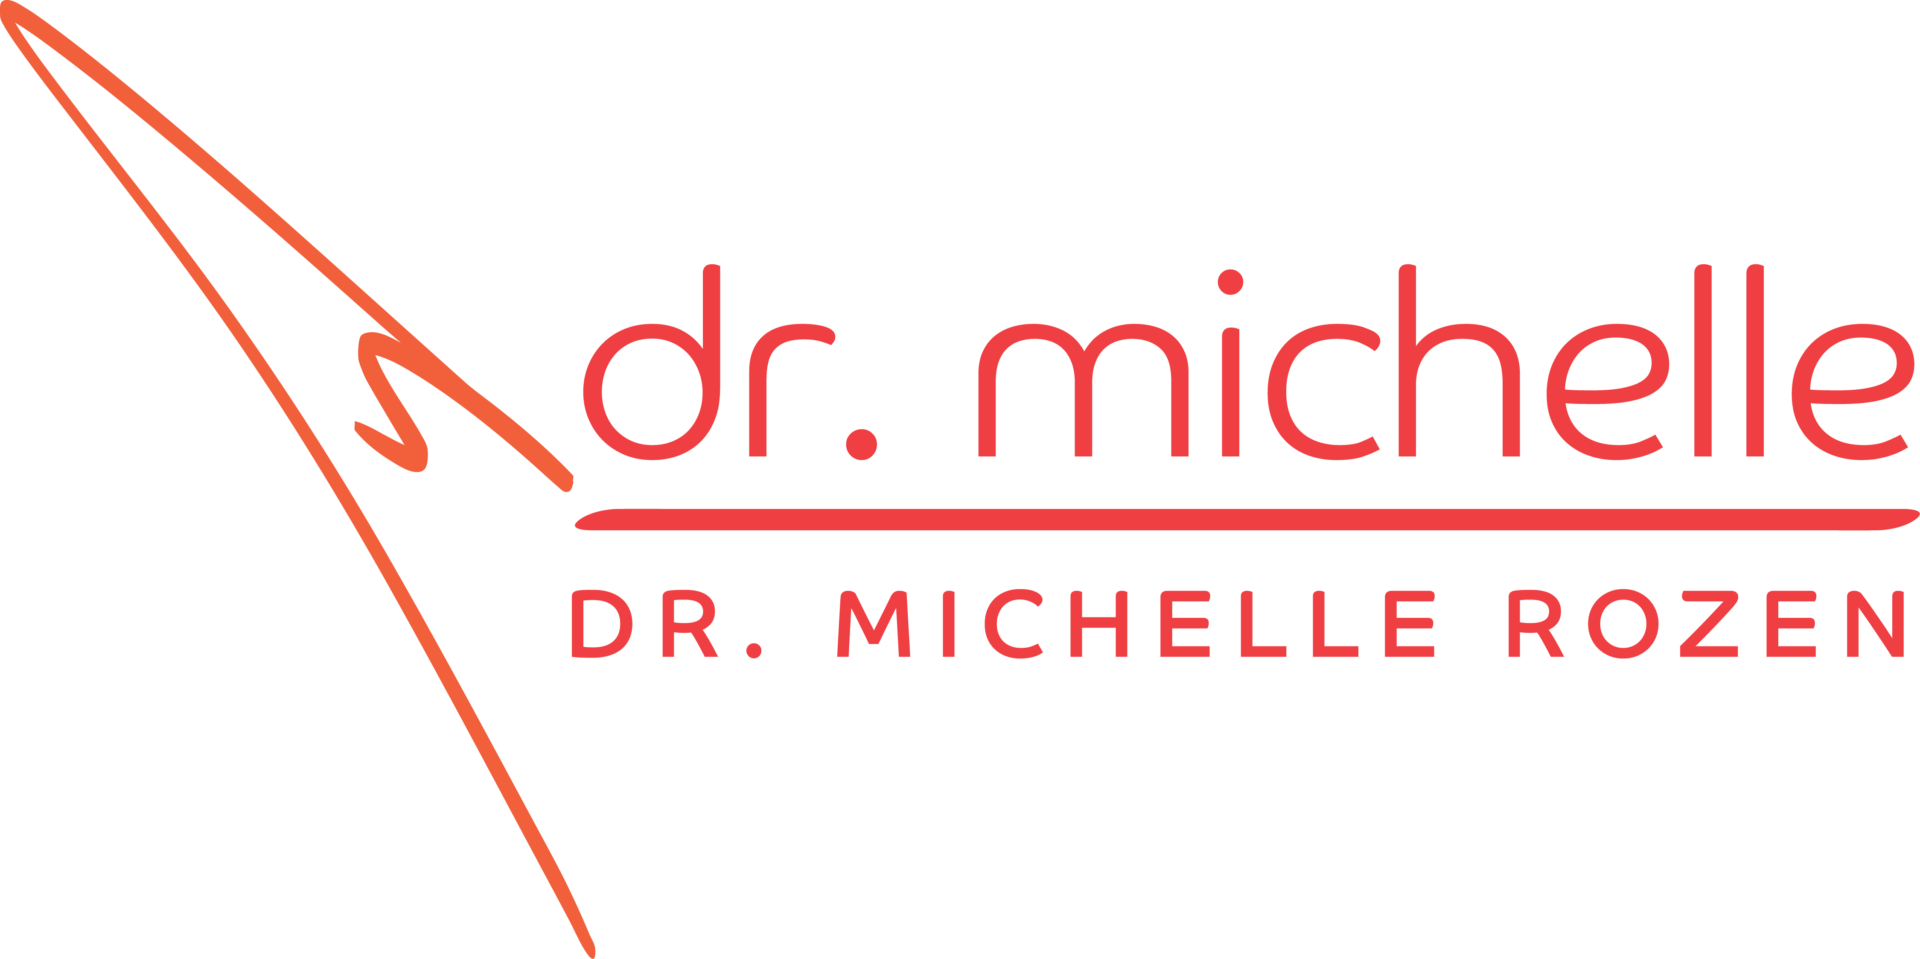 Dr. Michelle Rozen